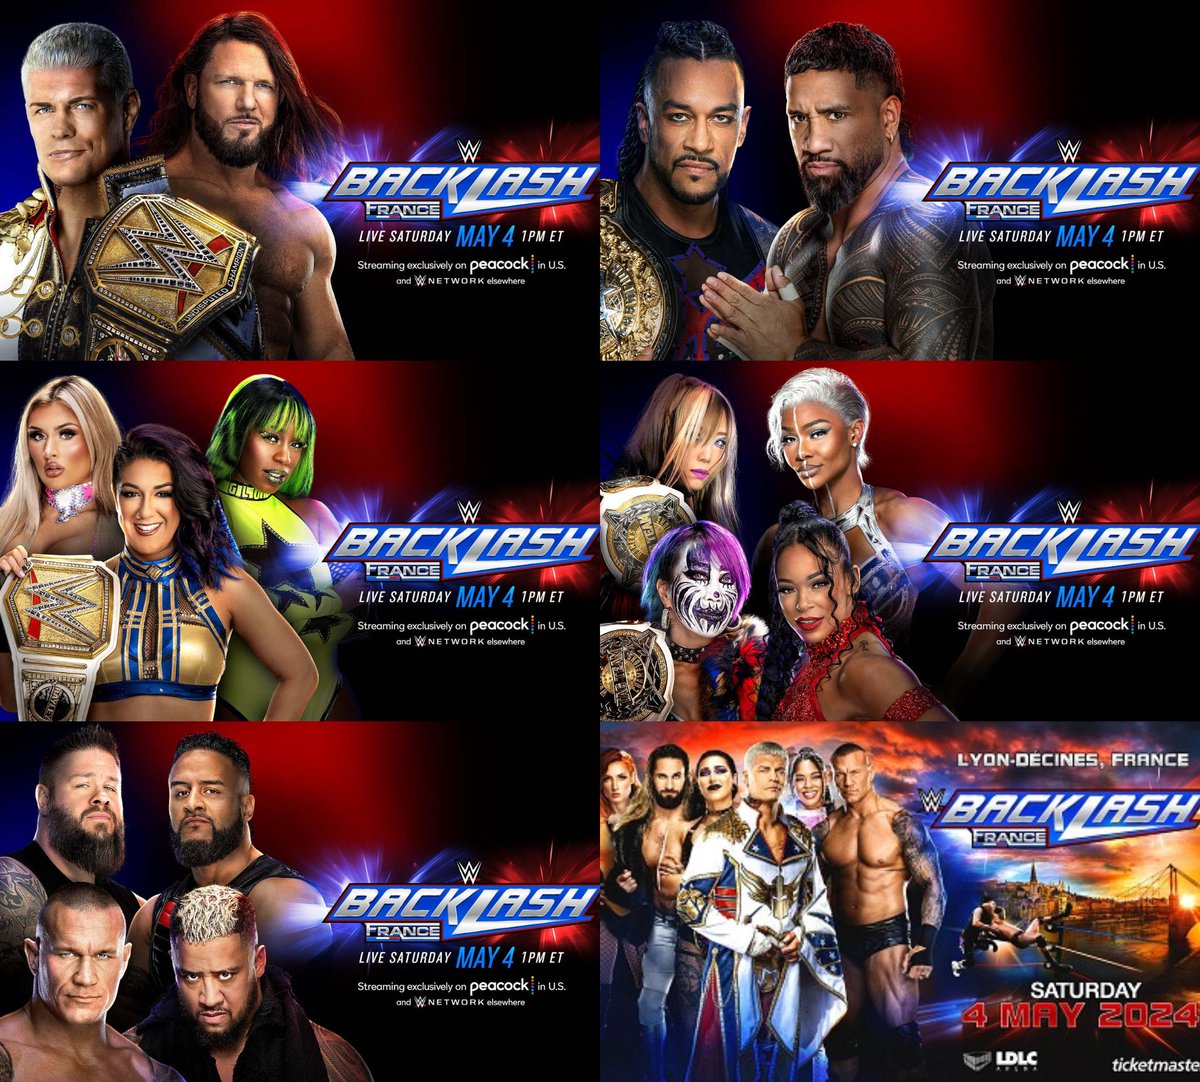 La cartelera actual (y veremos si final) de #WWEBacklash en Francia, con cinco combates anunciados. ¿Opiniones?